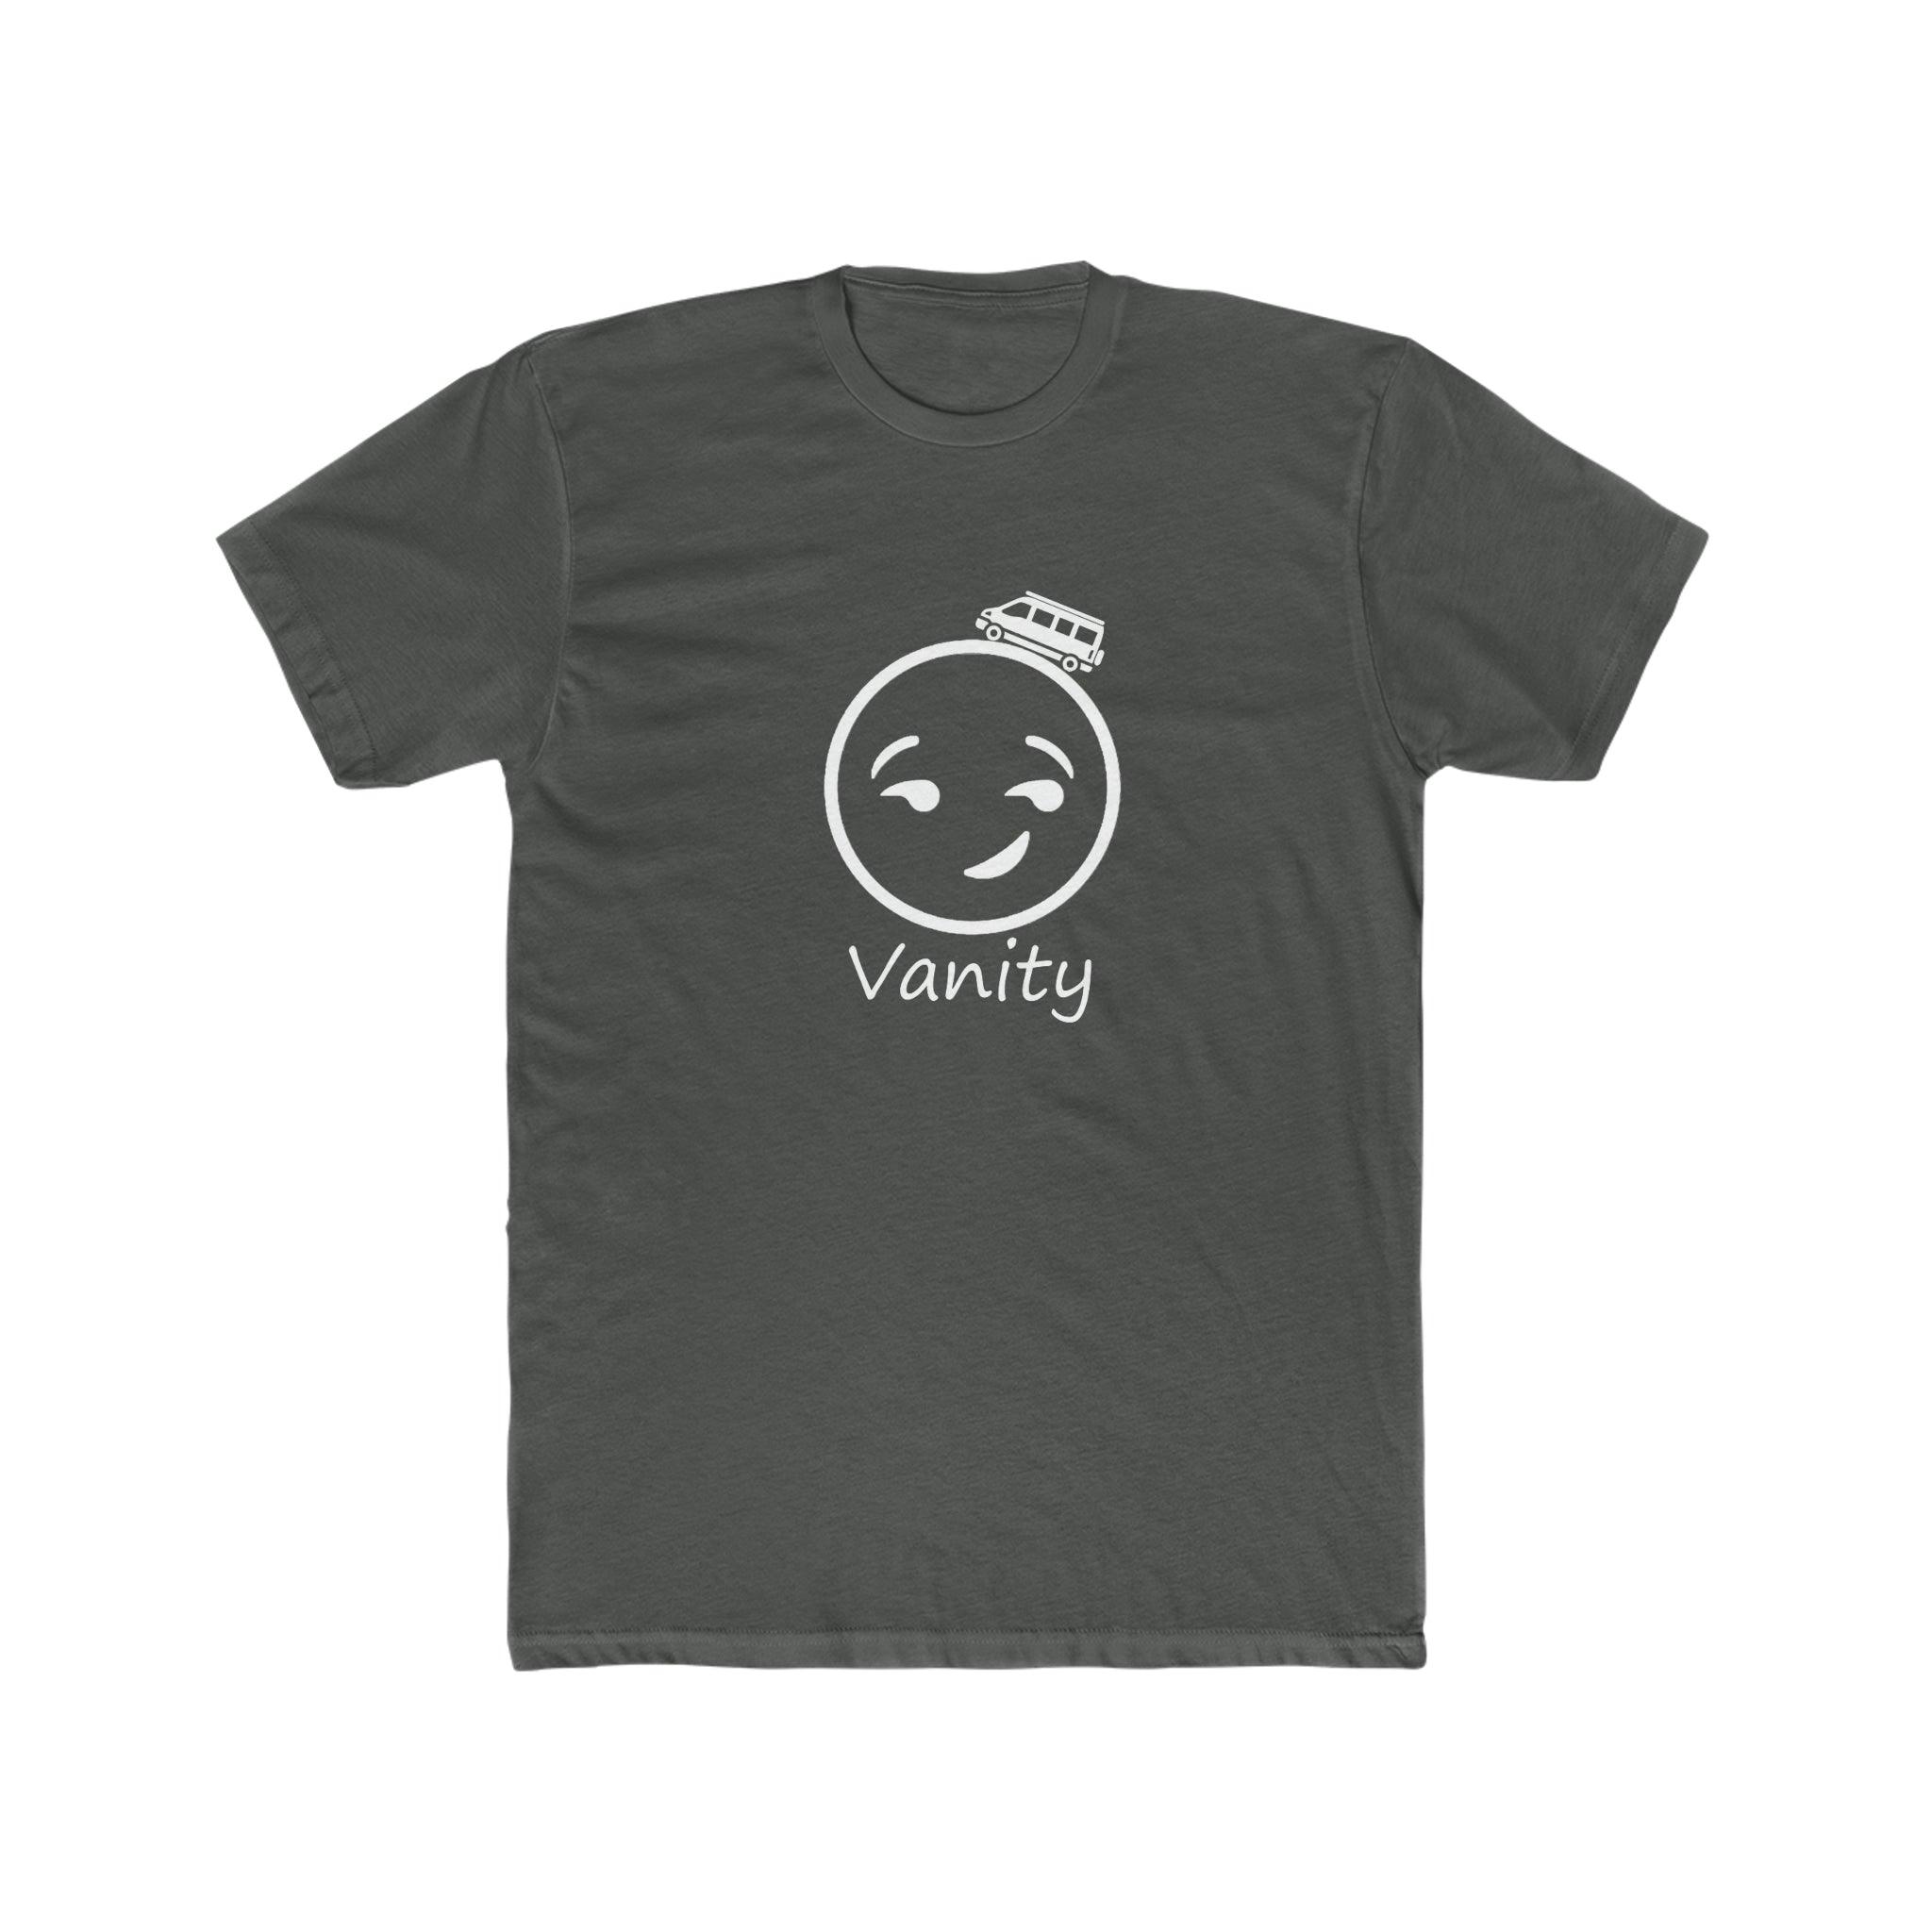 Vanity man - Sandy Vans